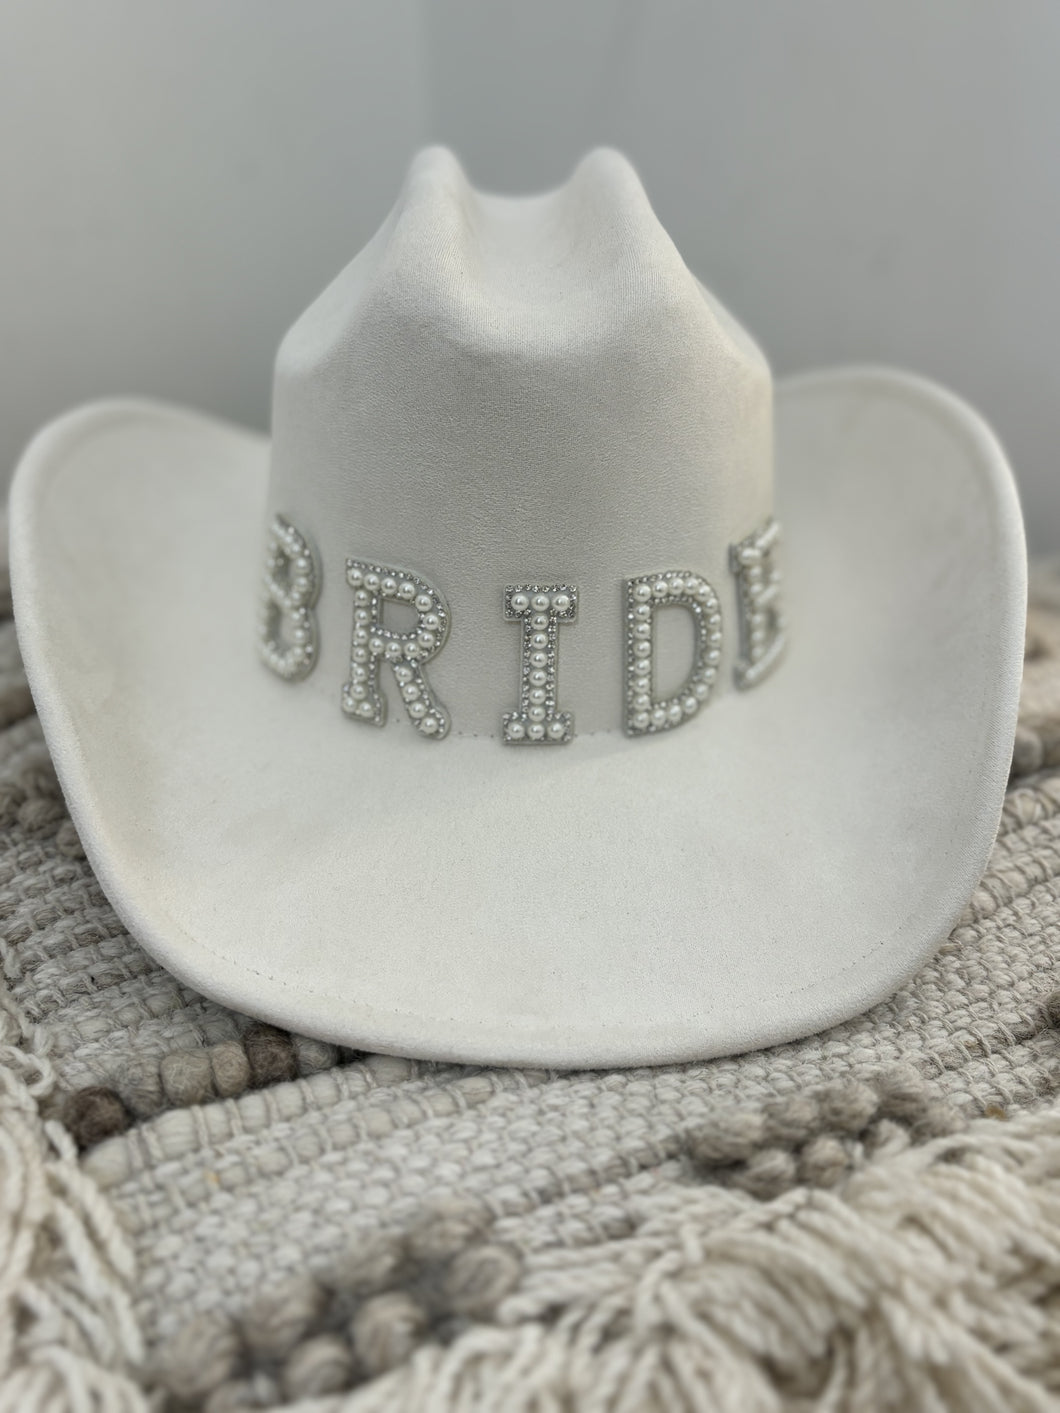 BRIDE COWBOY HAT